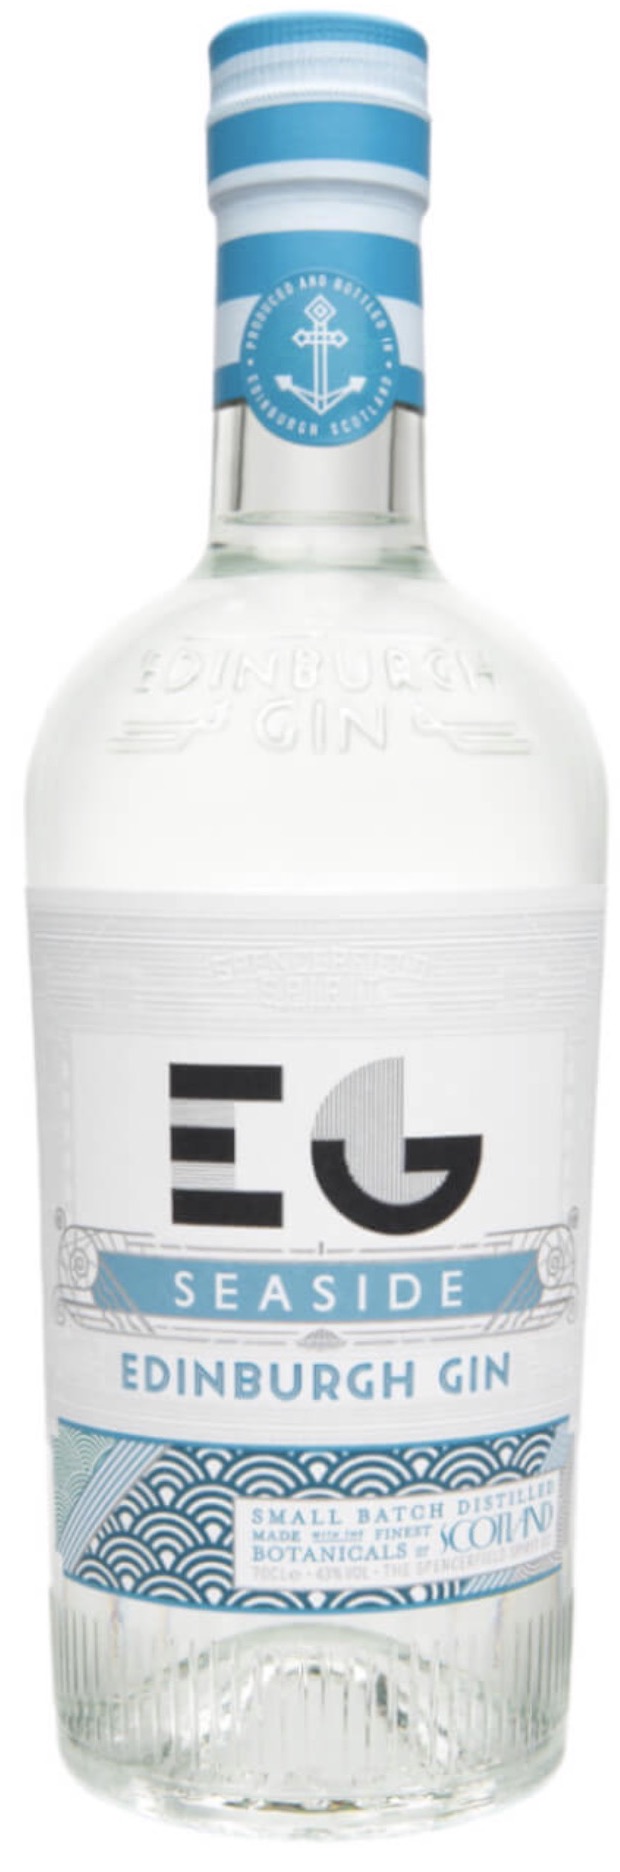 Edinburgh Seaside Gin 43% vol. 0,7L